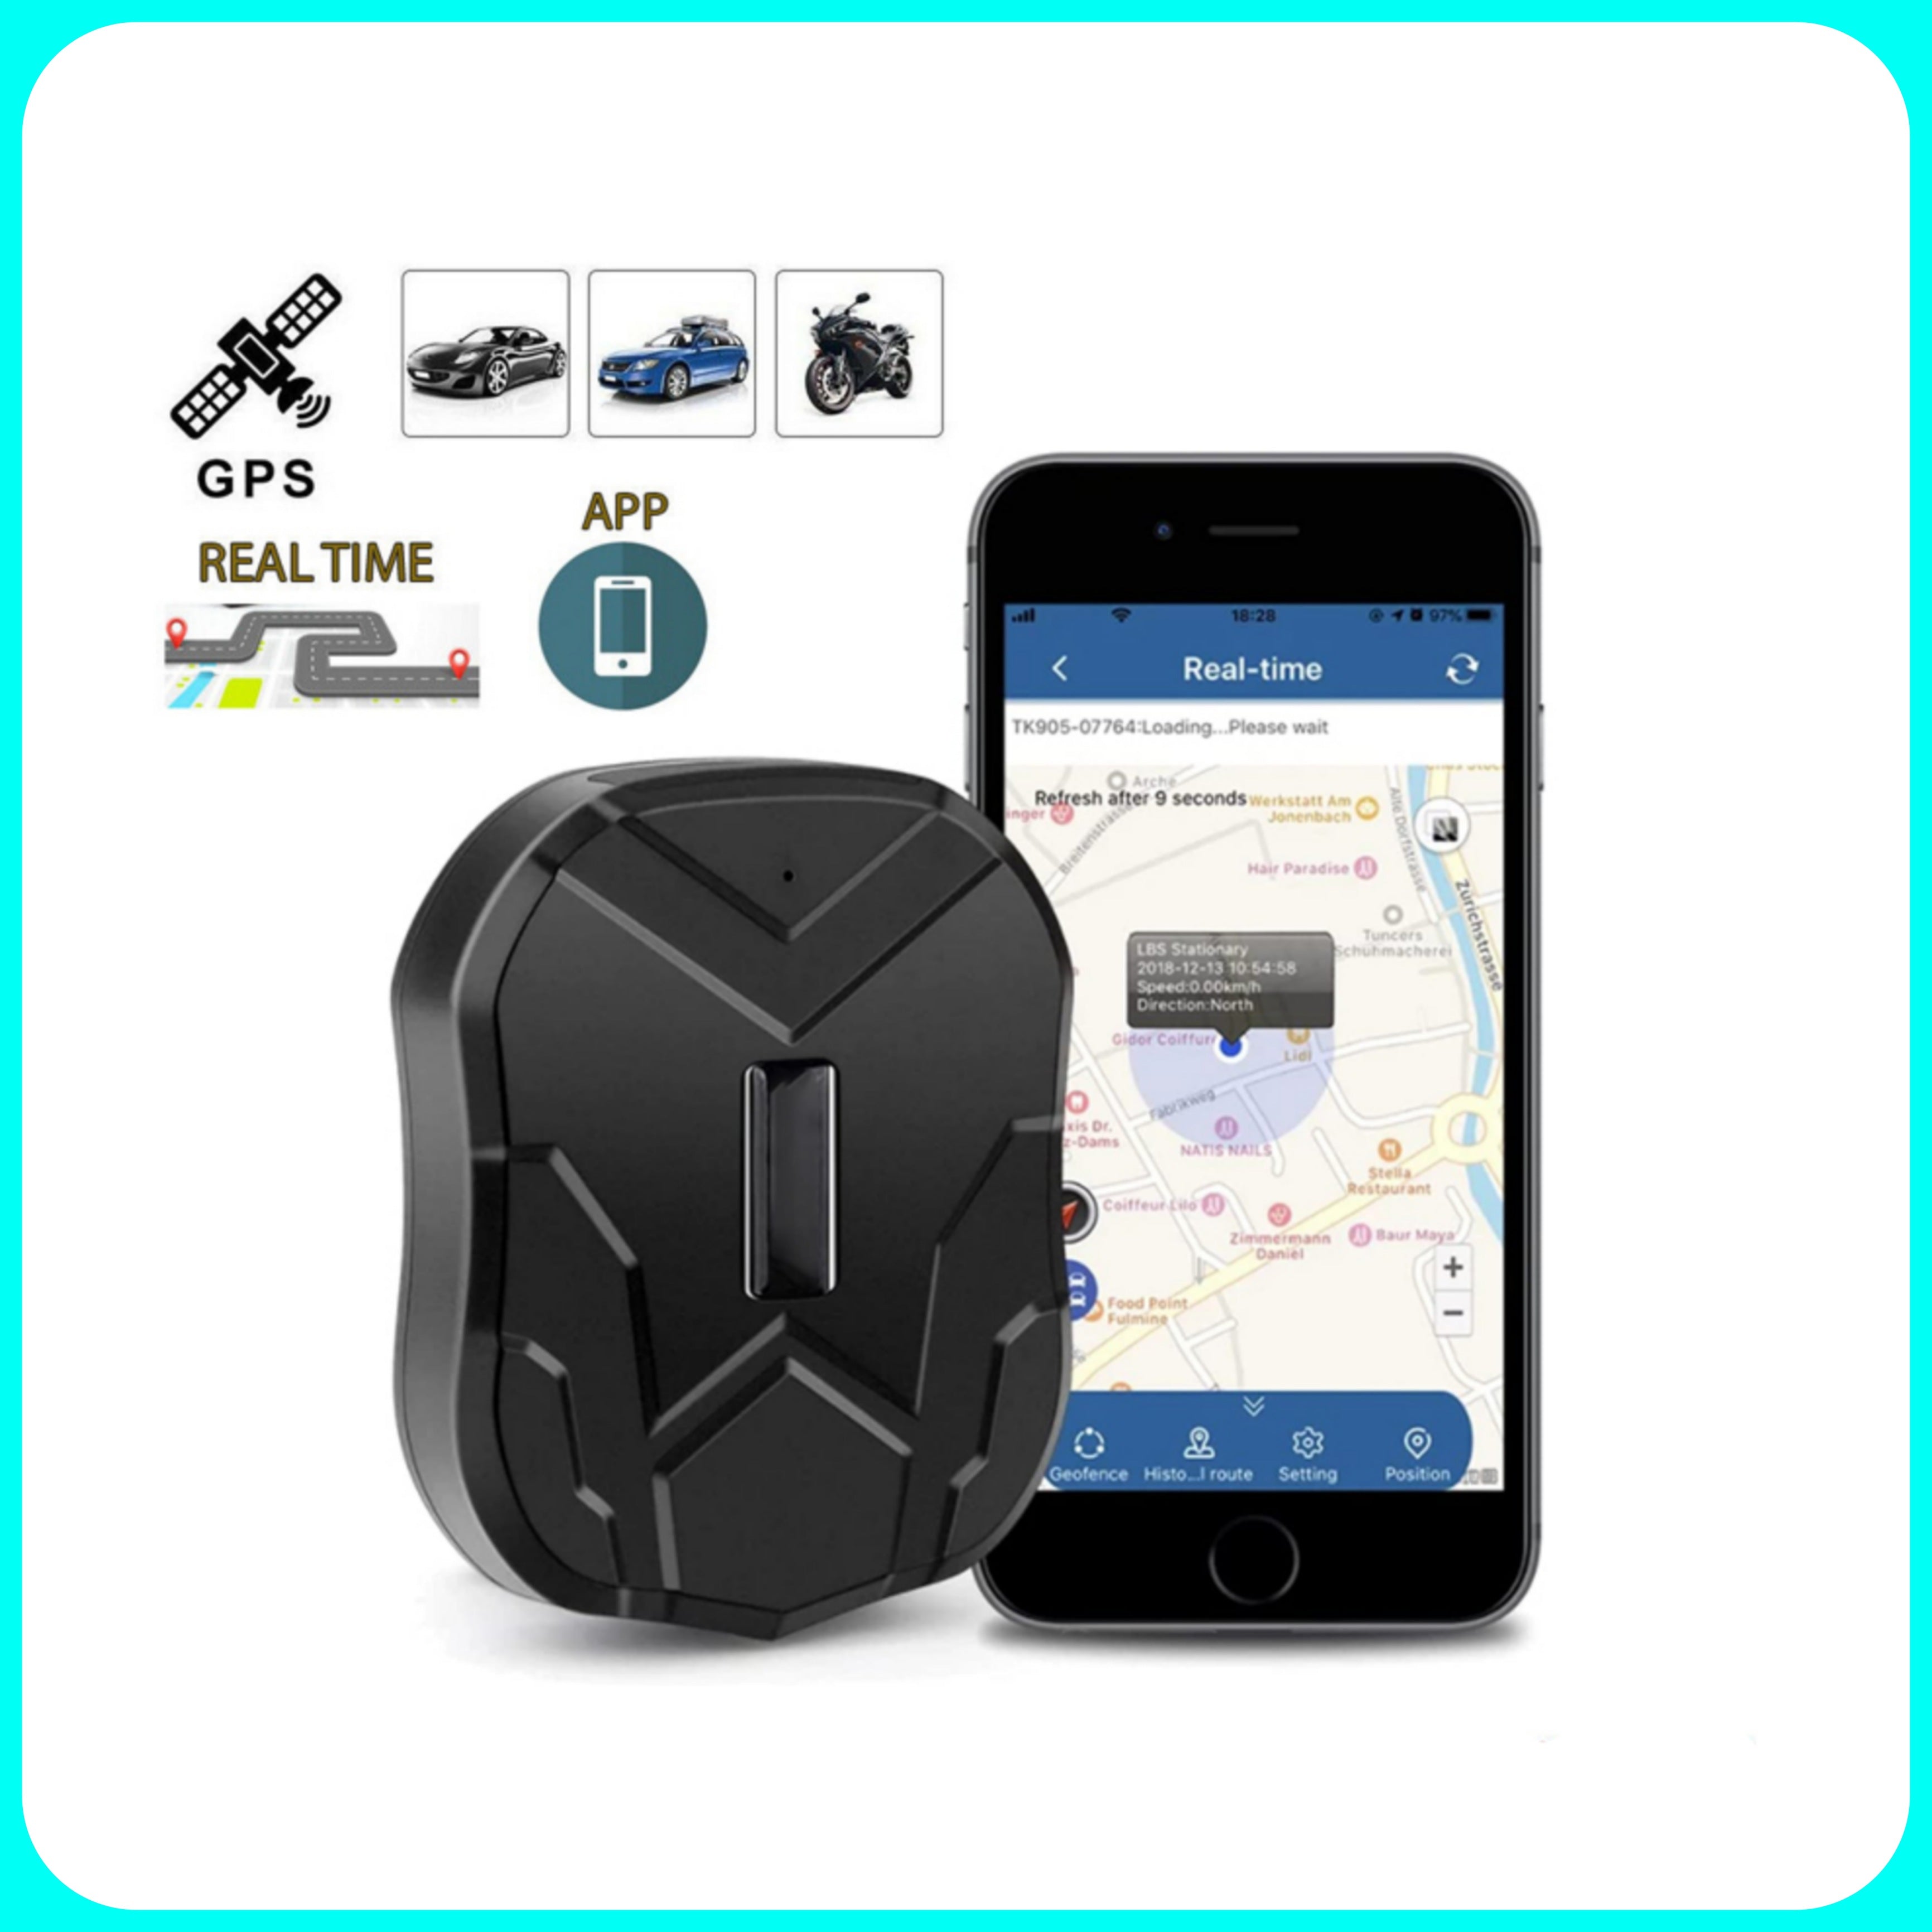 Traqueur GPS de voiture – Dispositif de suivi en temps réel anti-perte/antivol, traqueur GPS avec application gratuite de dispositif magnétique pour voiture/camion/moto/bateau/flotte 90 jours en veille 